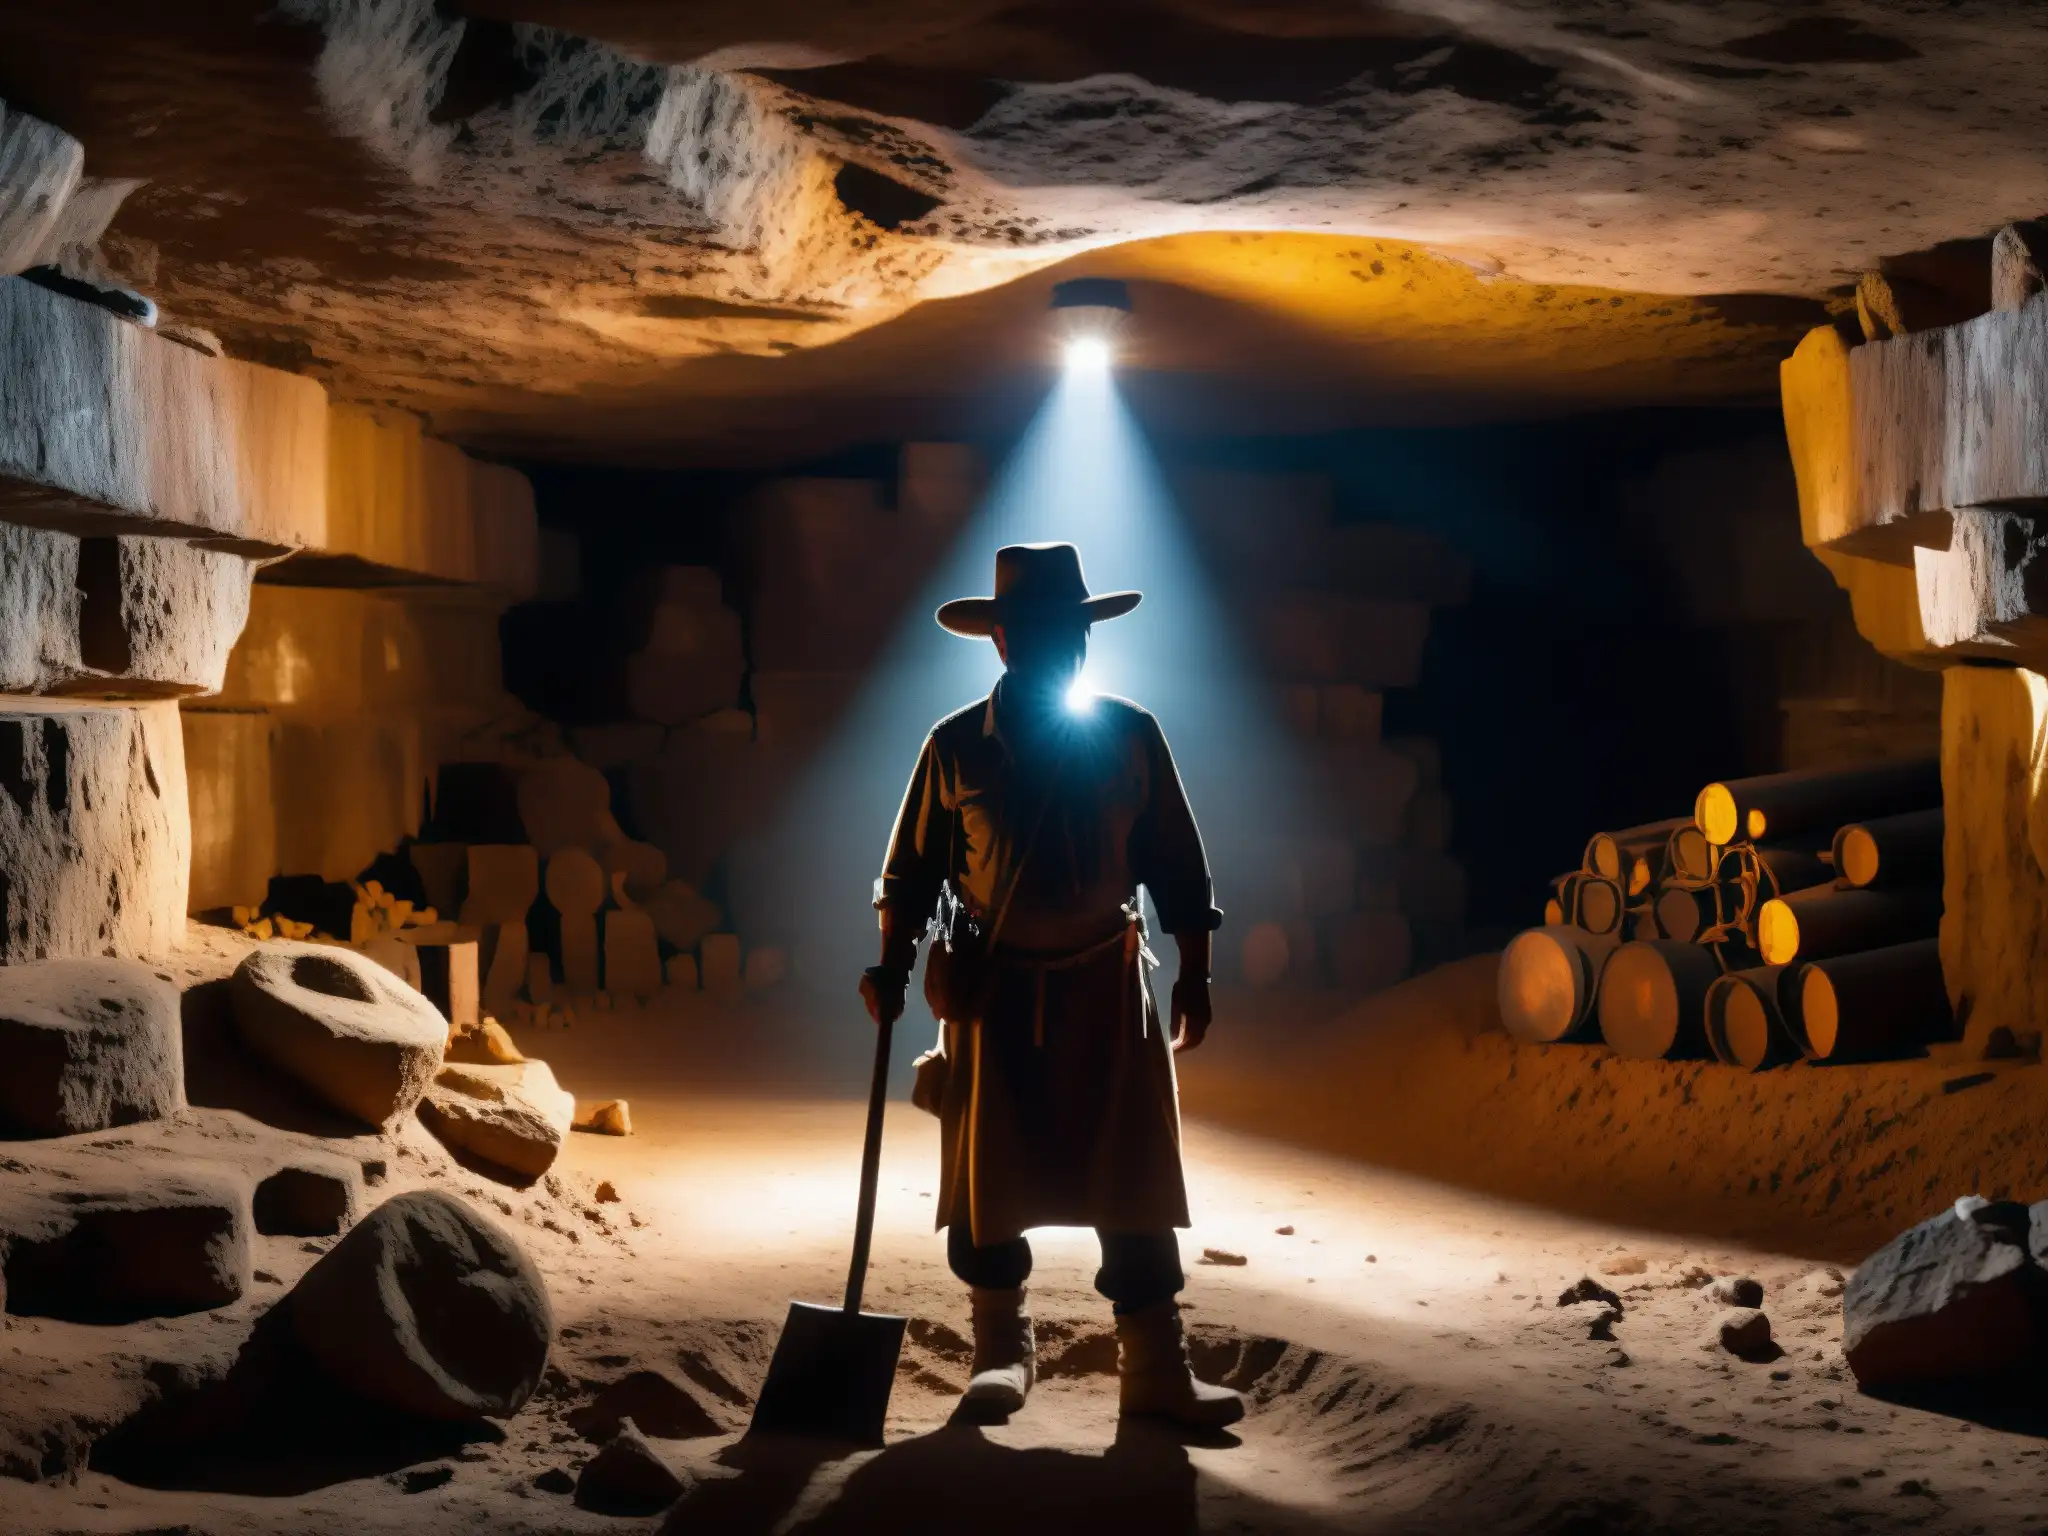 Un misterioso duende protector de los mineros de Zacatecas, iluminando la oscuridad de la mina con su figura enigmática